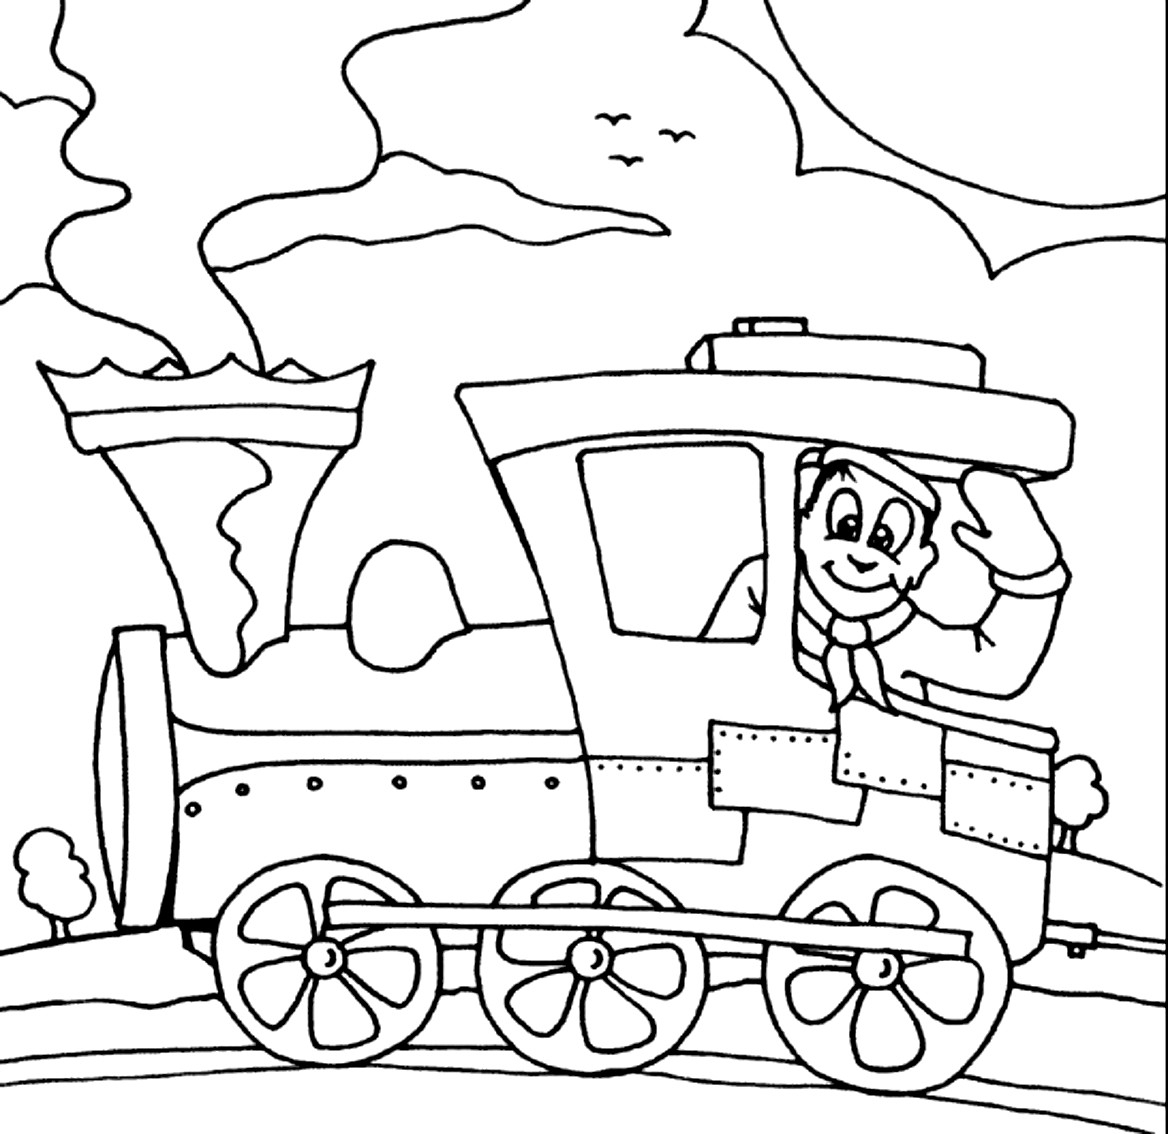 Раскраска для детей профессия железнодорожника